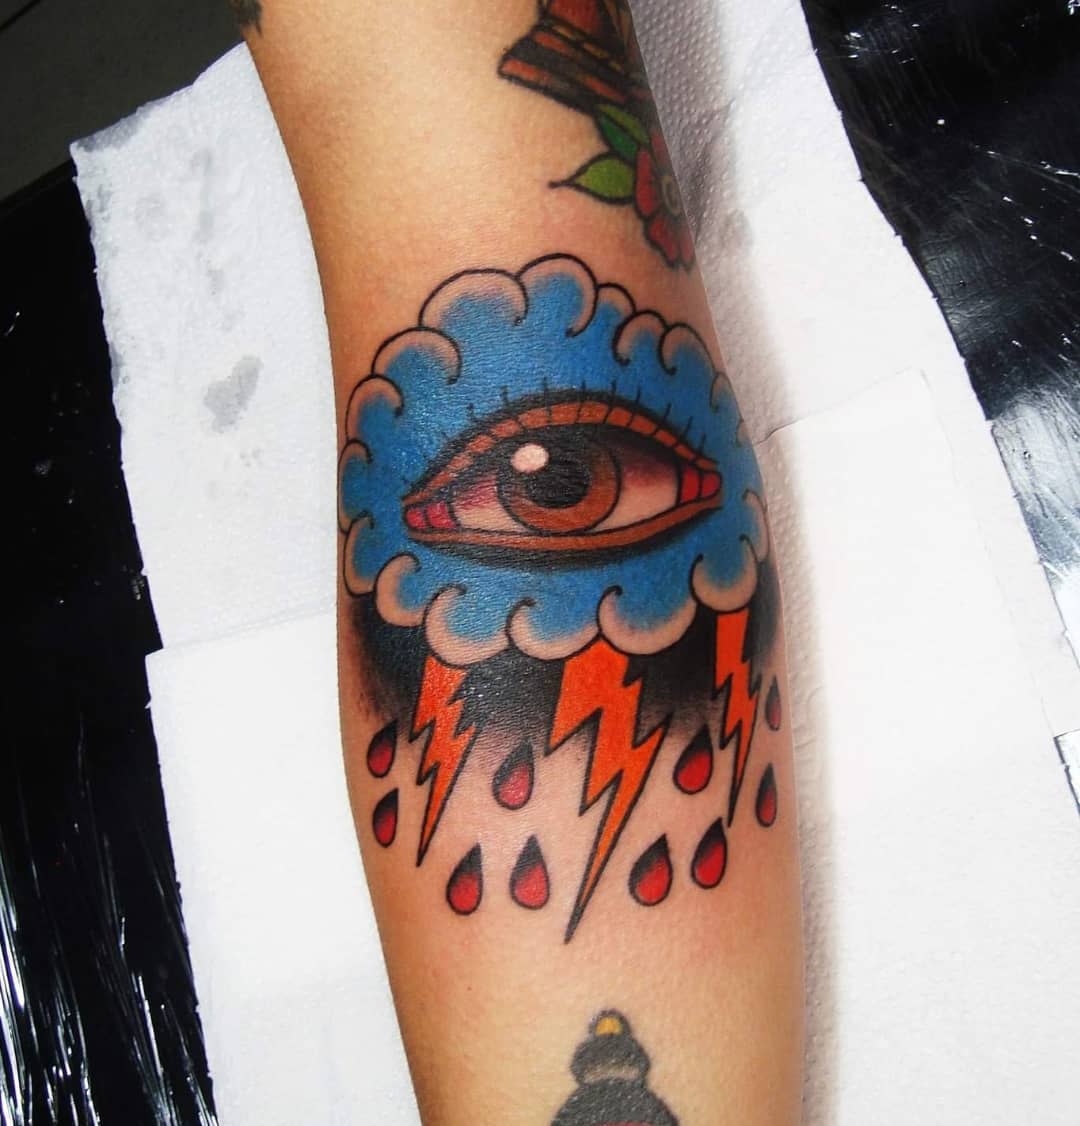 Colored cloud eye tattoo.